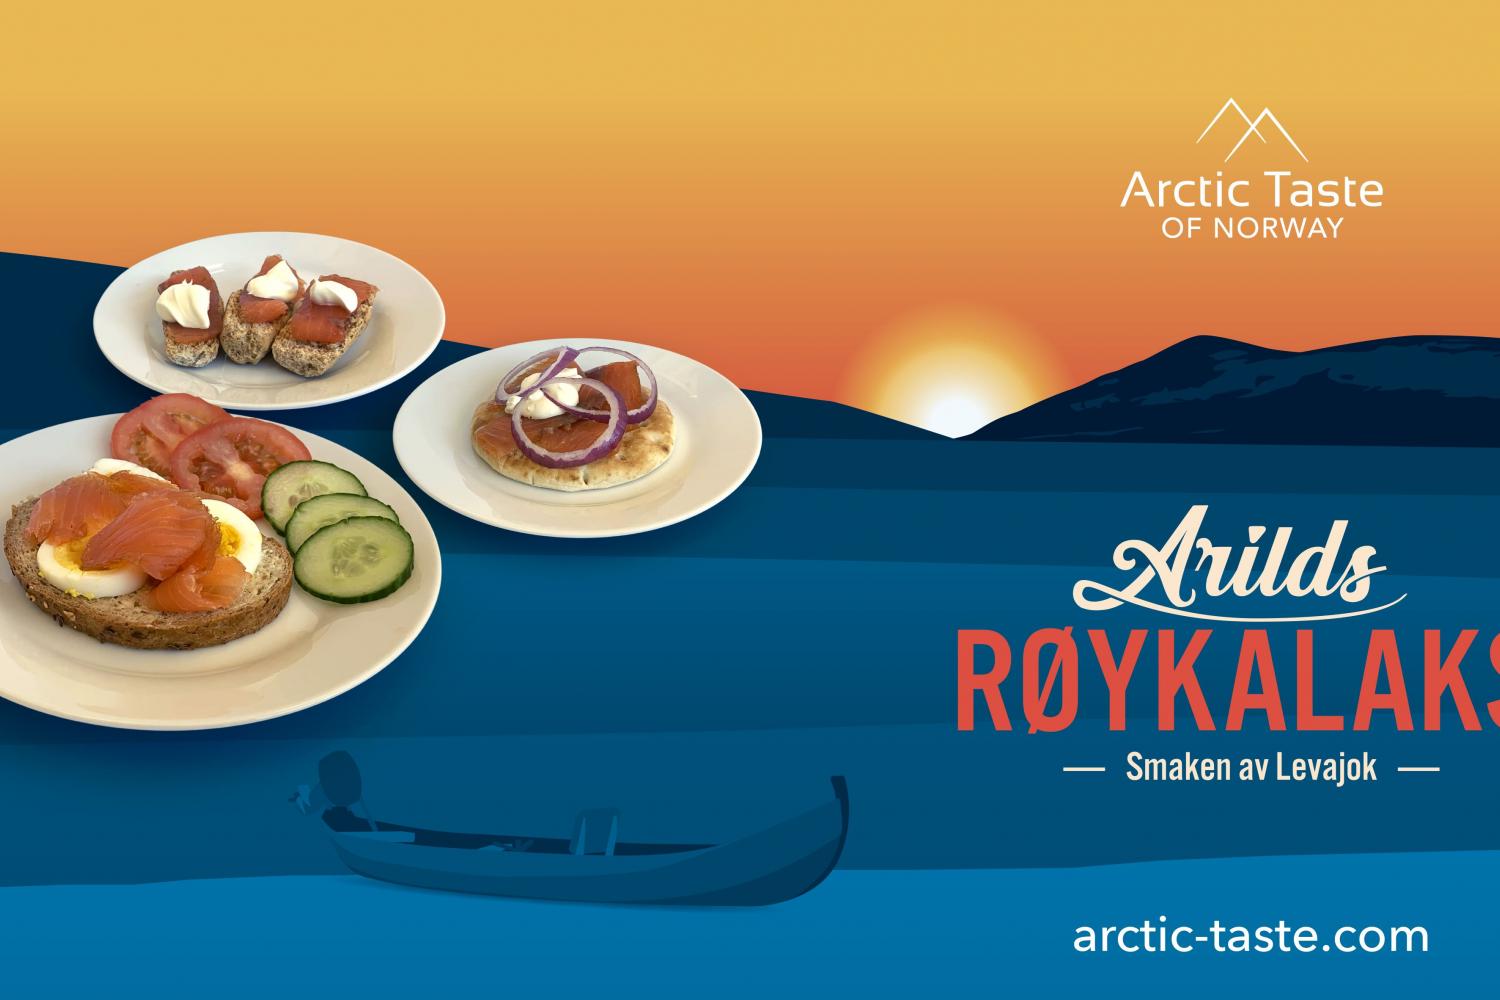 Arctic Taste of Norway